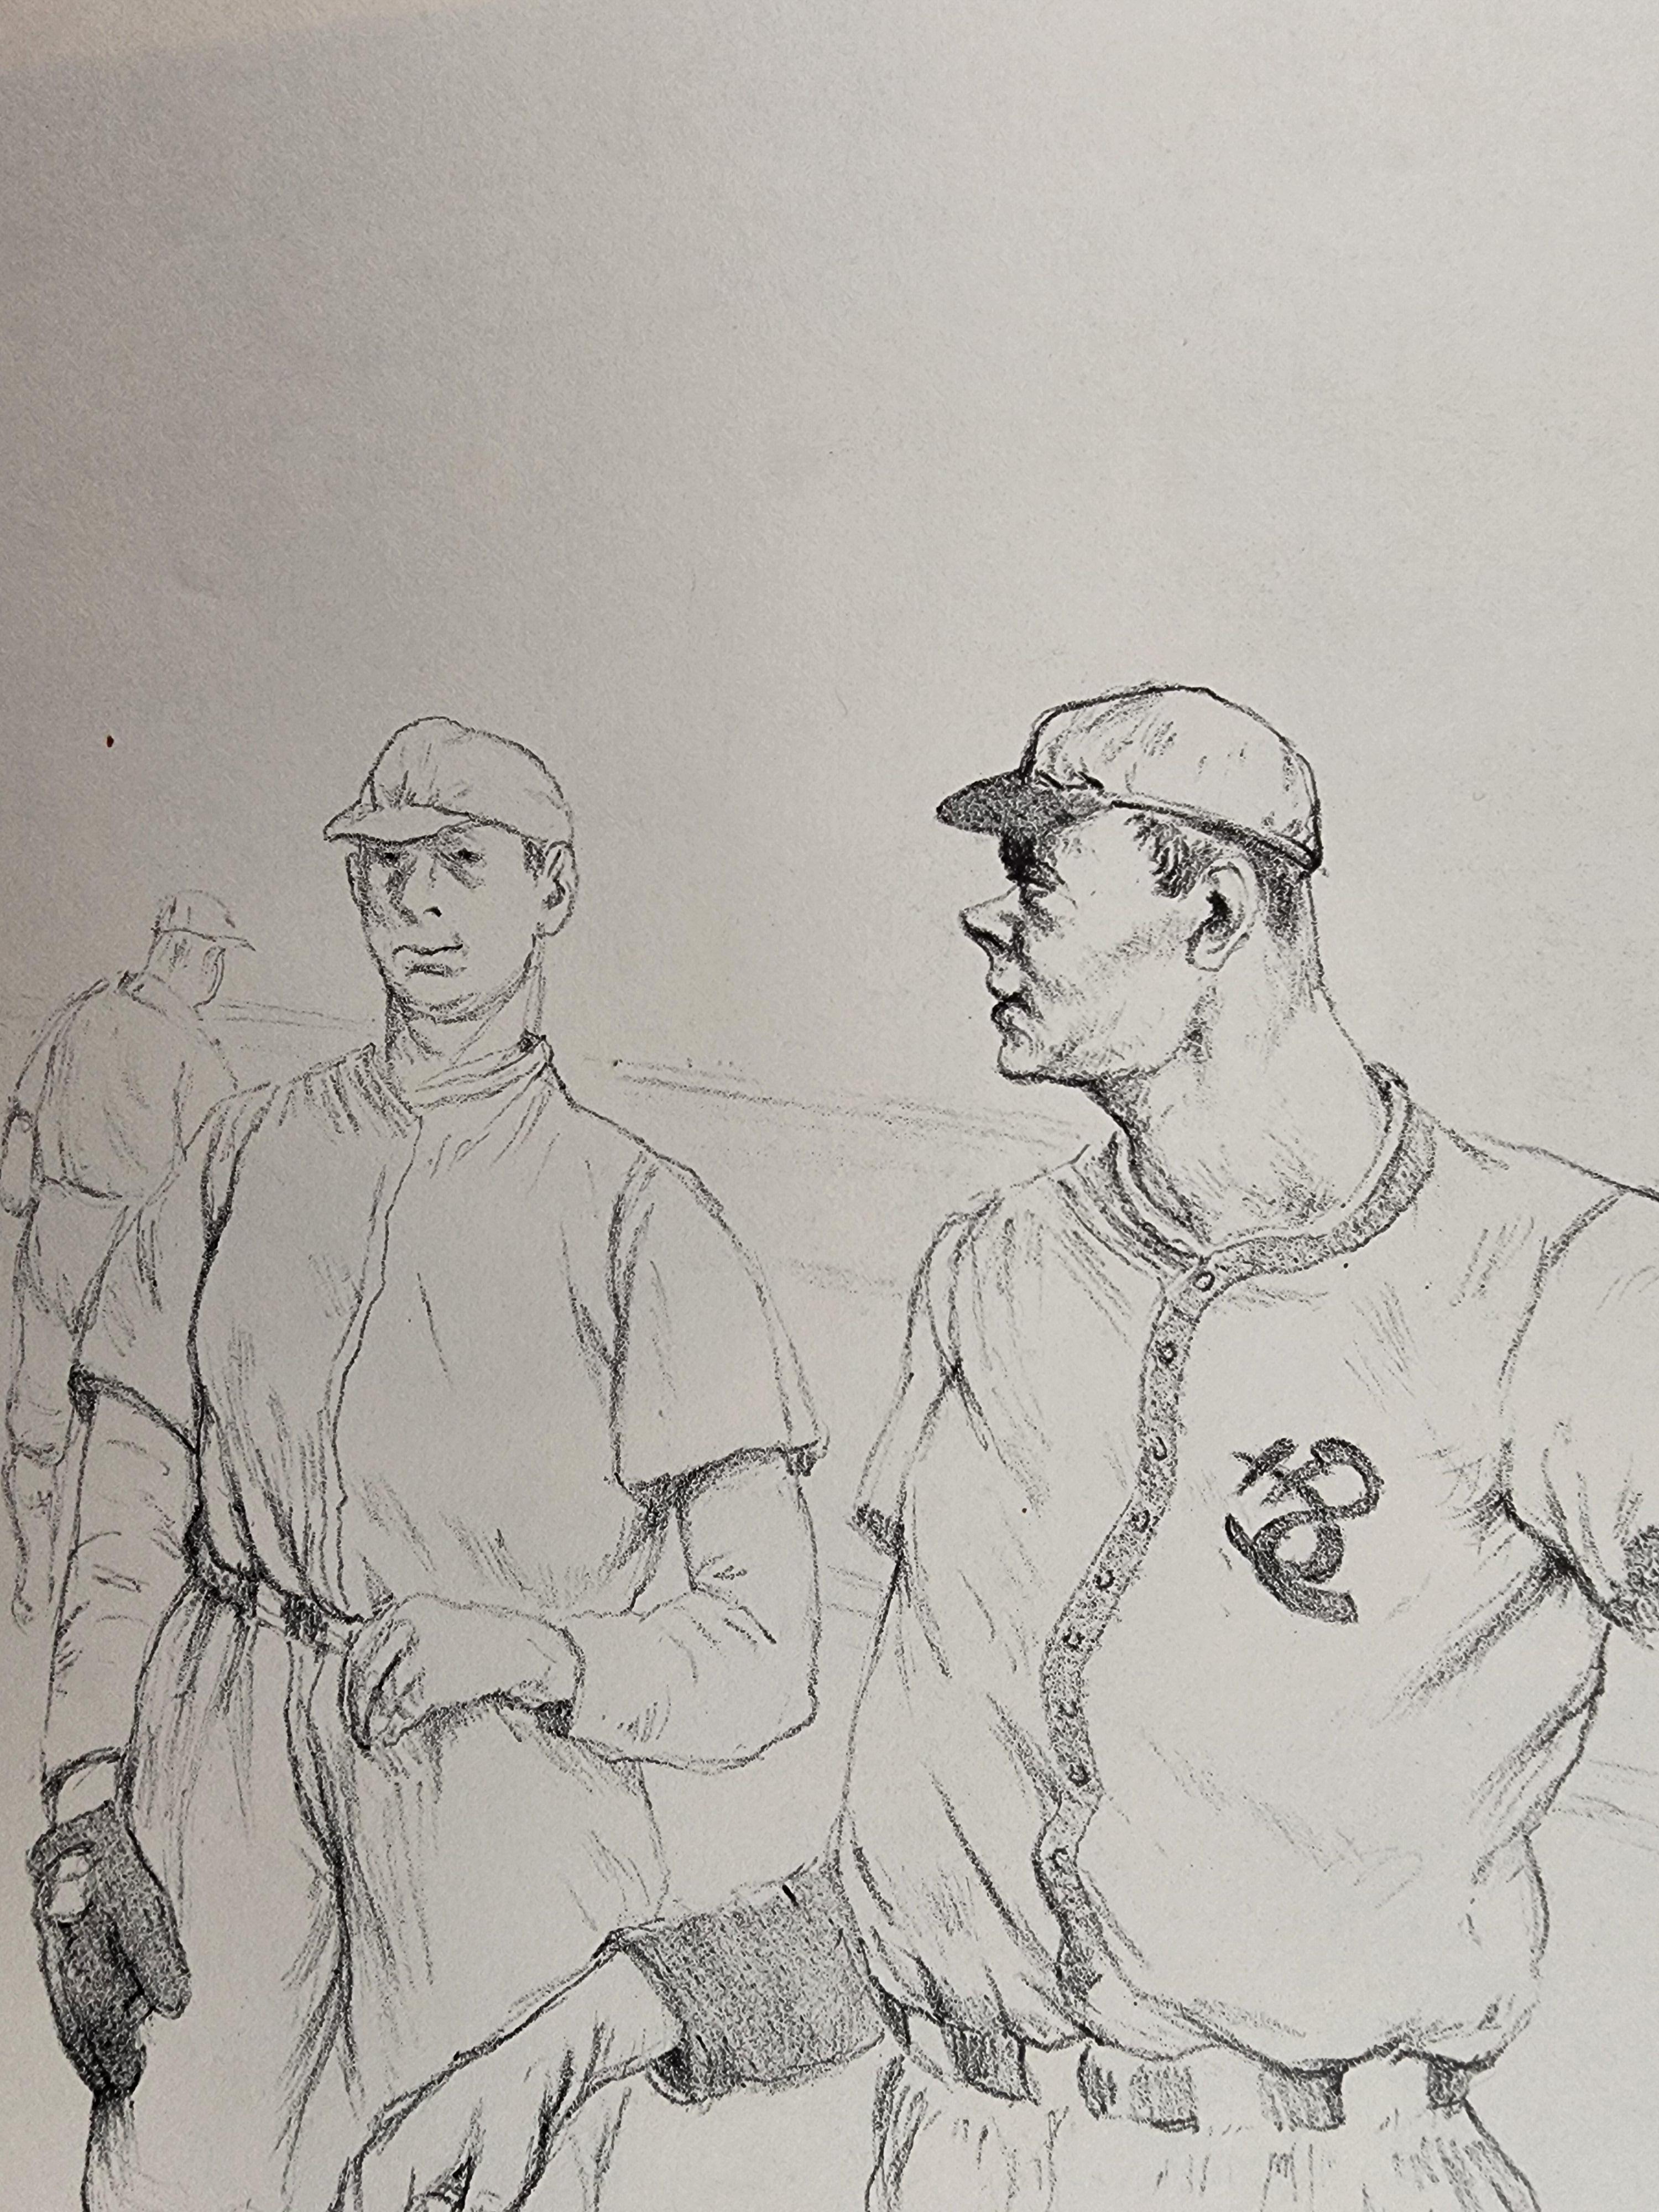 RGRFINEARTS a le plaisir de vous proposer cette lithographie d'Alibi Ike sur le thème du baseball, d'après le personnage du film de 1935.
Un bel exemple de la qualité du dessin qui a fait la réputation de Pickhardt.